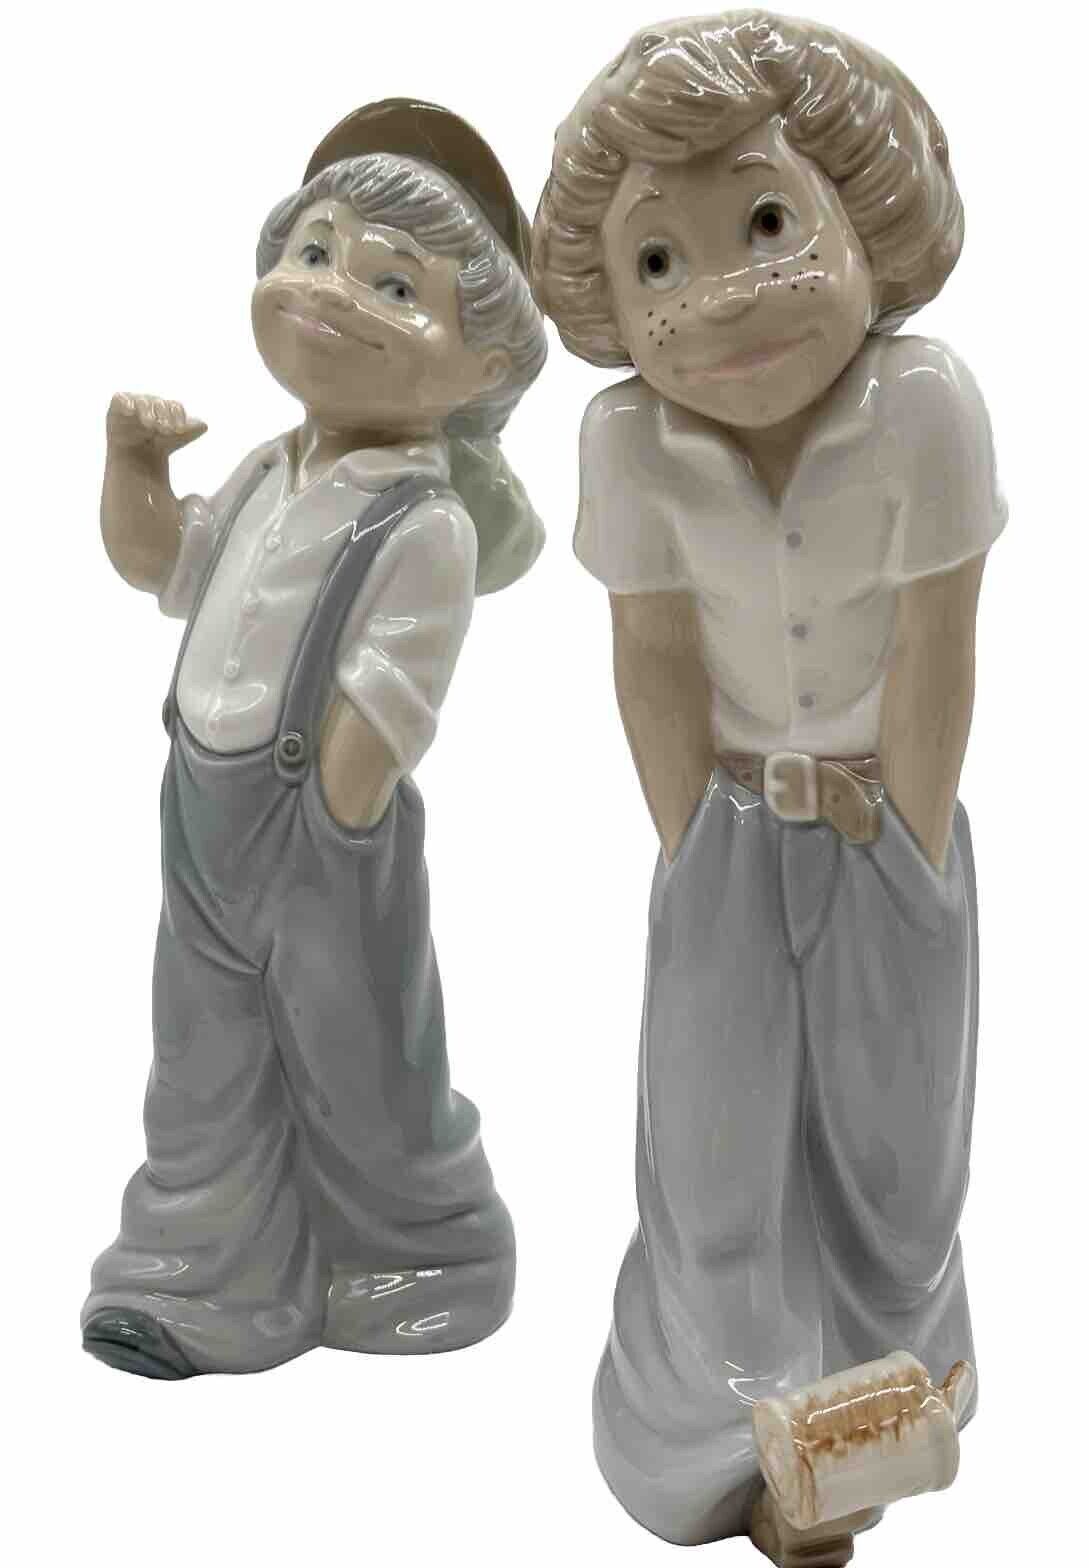 Vintage Lladro Original Large Porcelain Figurines Zaphir walking Boy Kicking Can